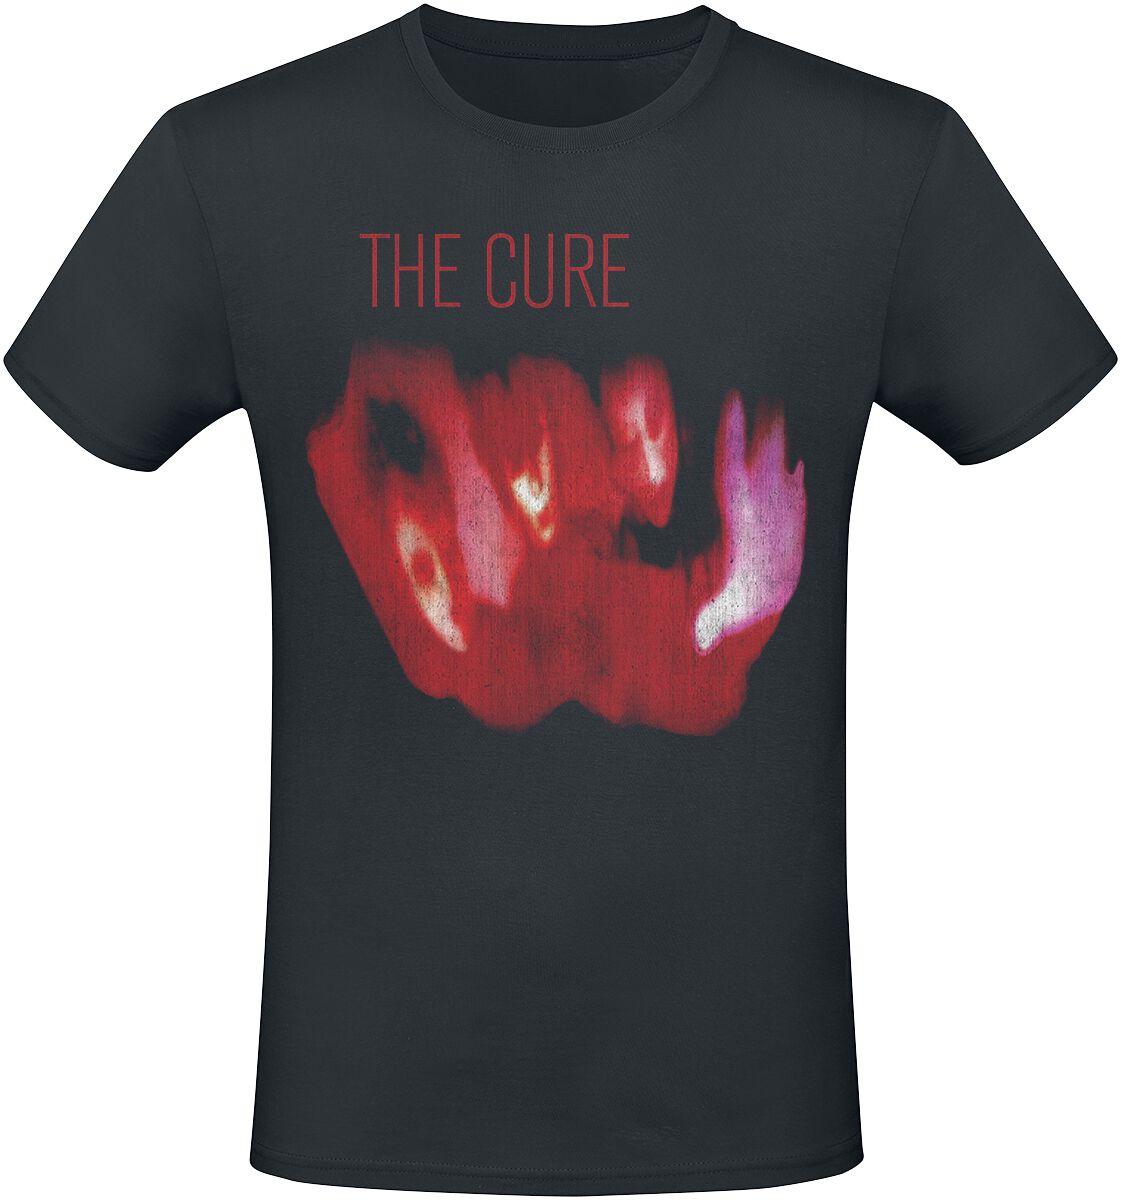 The Cure T-Shirt - Pornography 1982 - XL bis 3XL - für Männer - Größe XXL - schwarz  - Lizenziertes Merchandise!